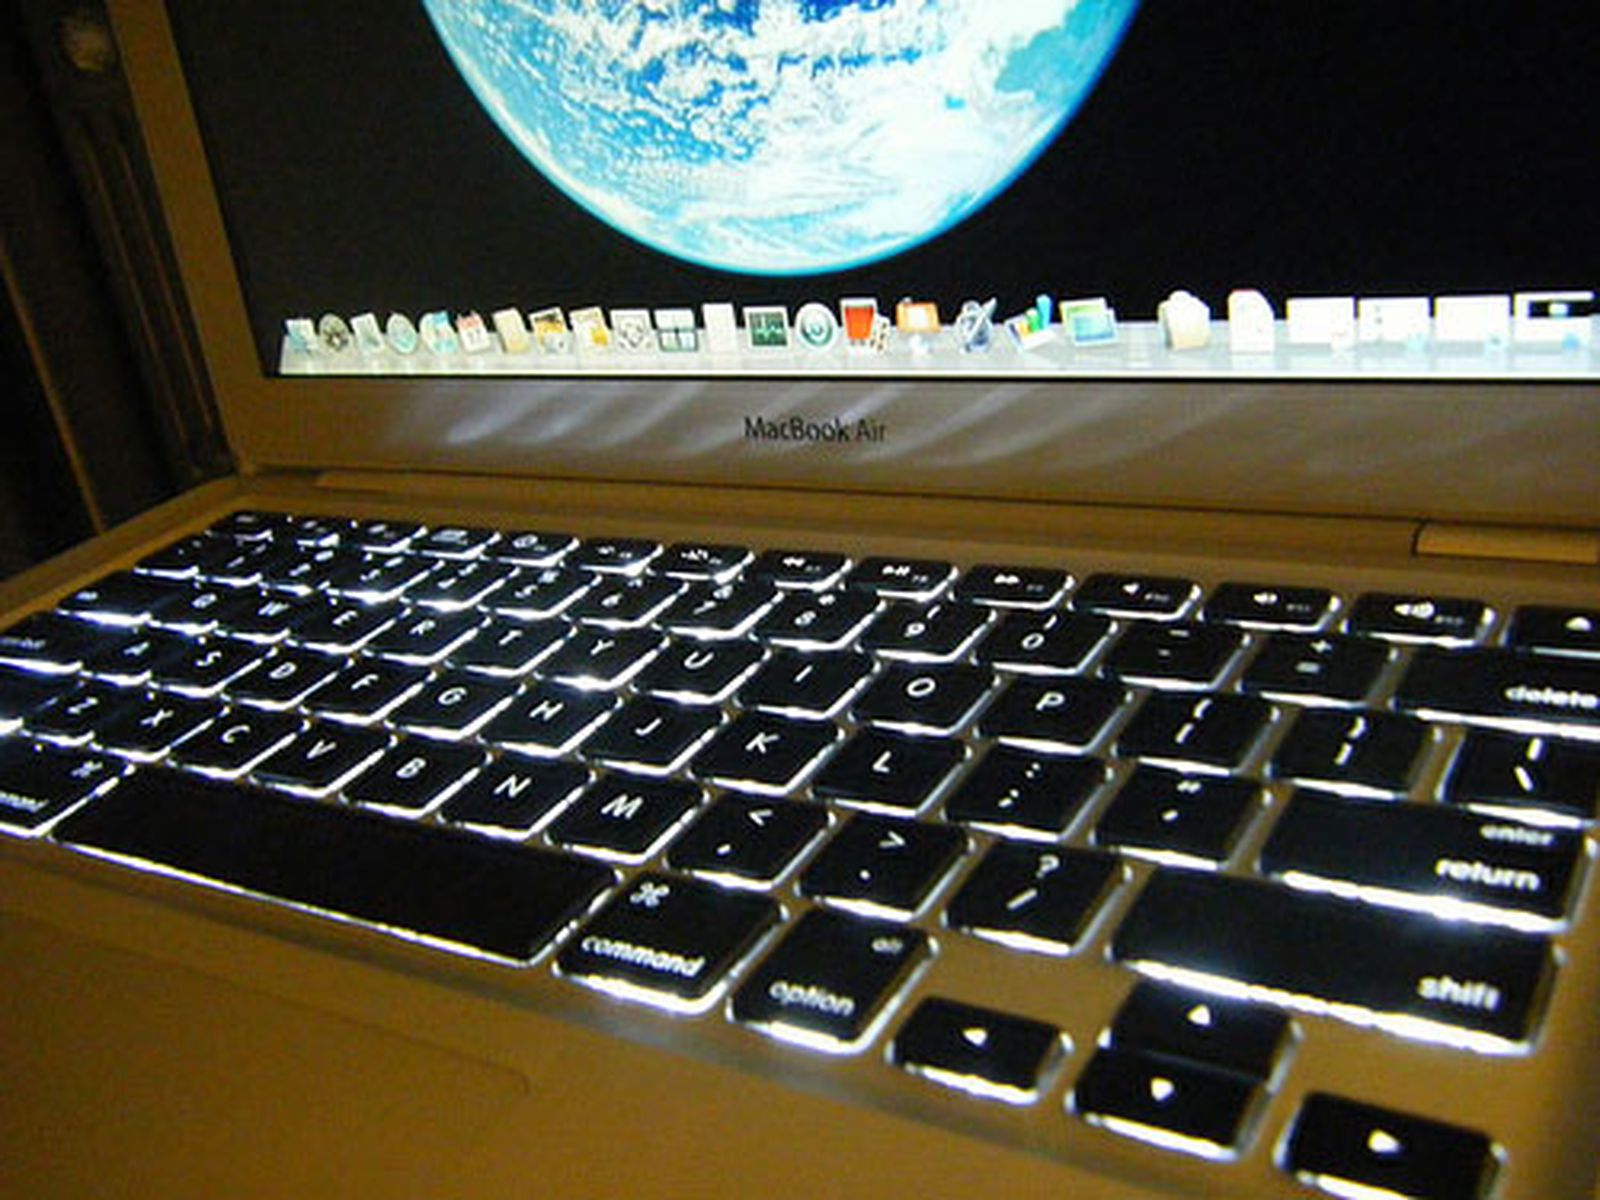 Подсветка клавиатуры ноутбука выключается. MACBOOK Air m1 подсветка клавиатуры. MACBOOK Air m2 подсветка клавиатуры. Подсветка клавиатуры Apple MACBOOK Air. Подсветка клавиатуры макбук АИР м1.